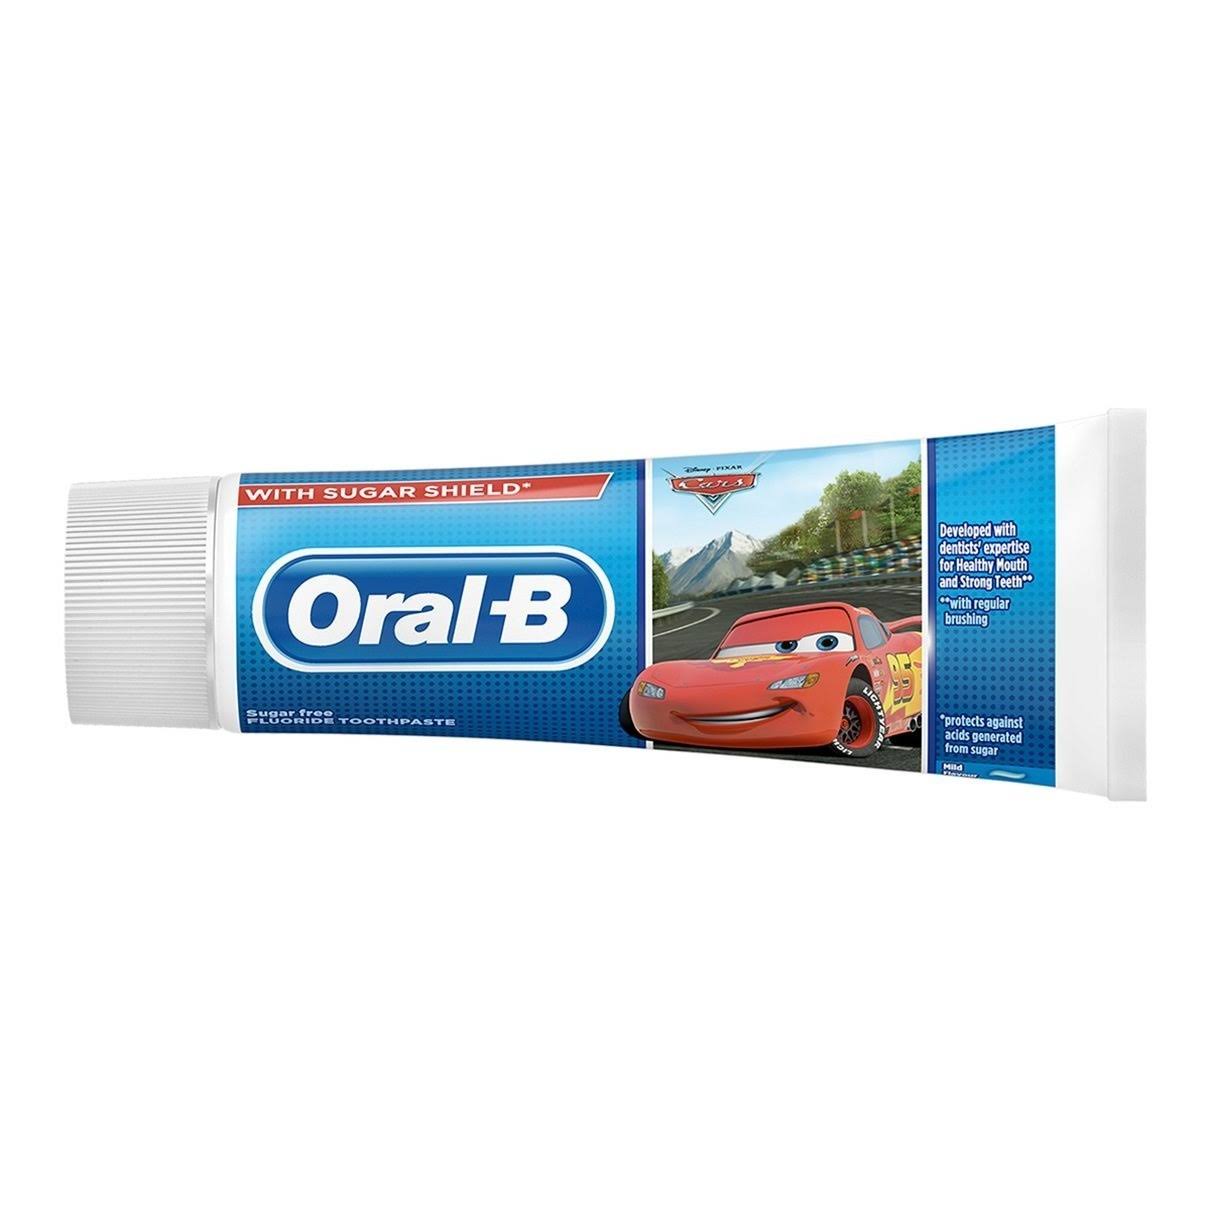 Oral-B Kids Frozen Toothpaste - 3+ Years, 75ml